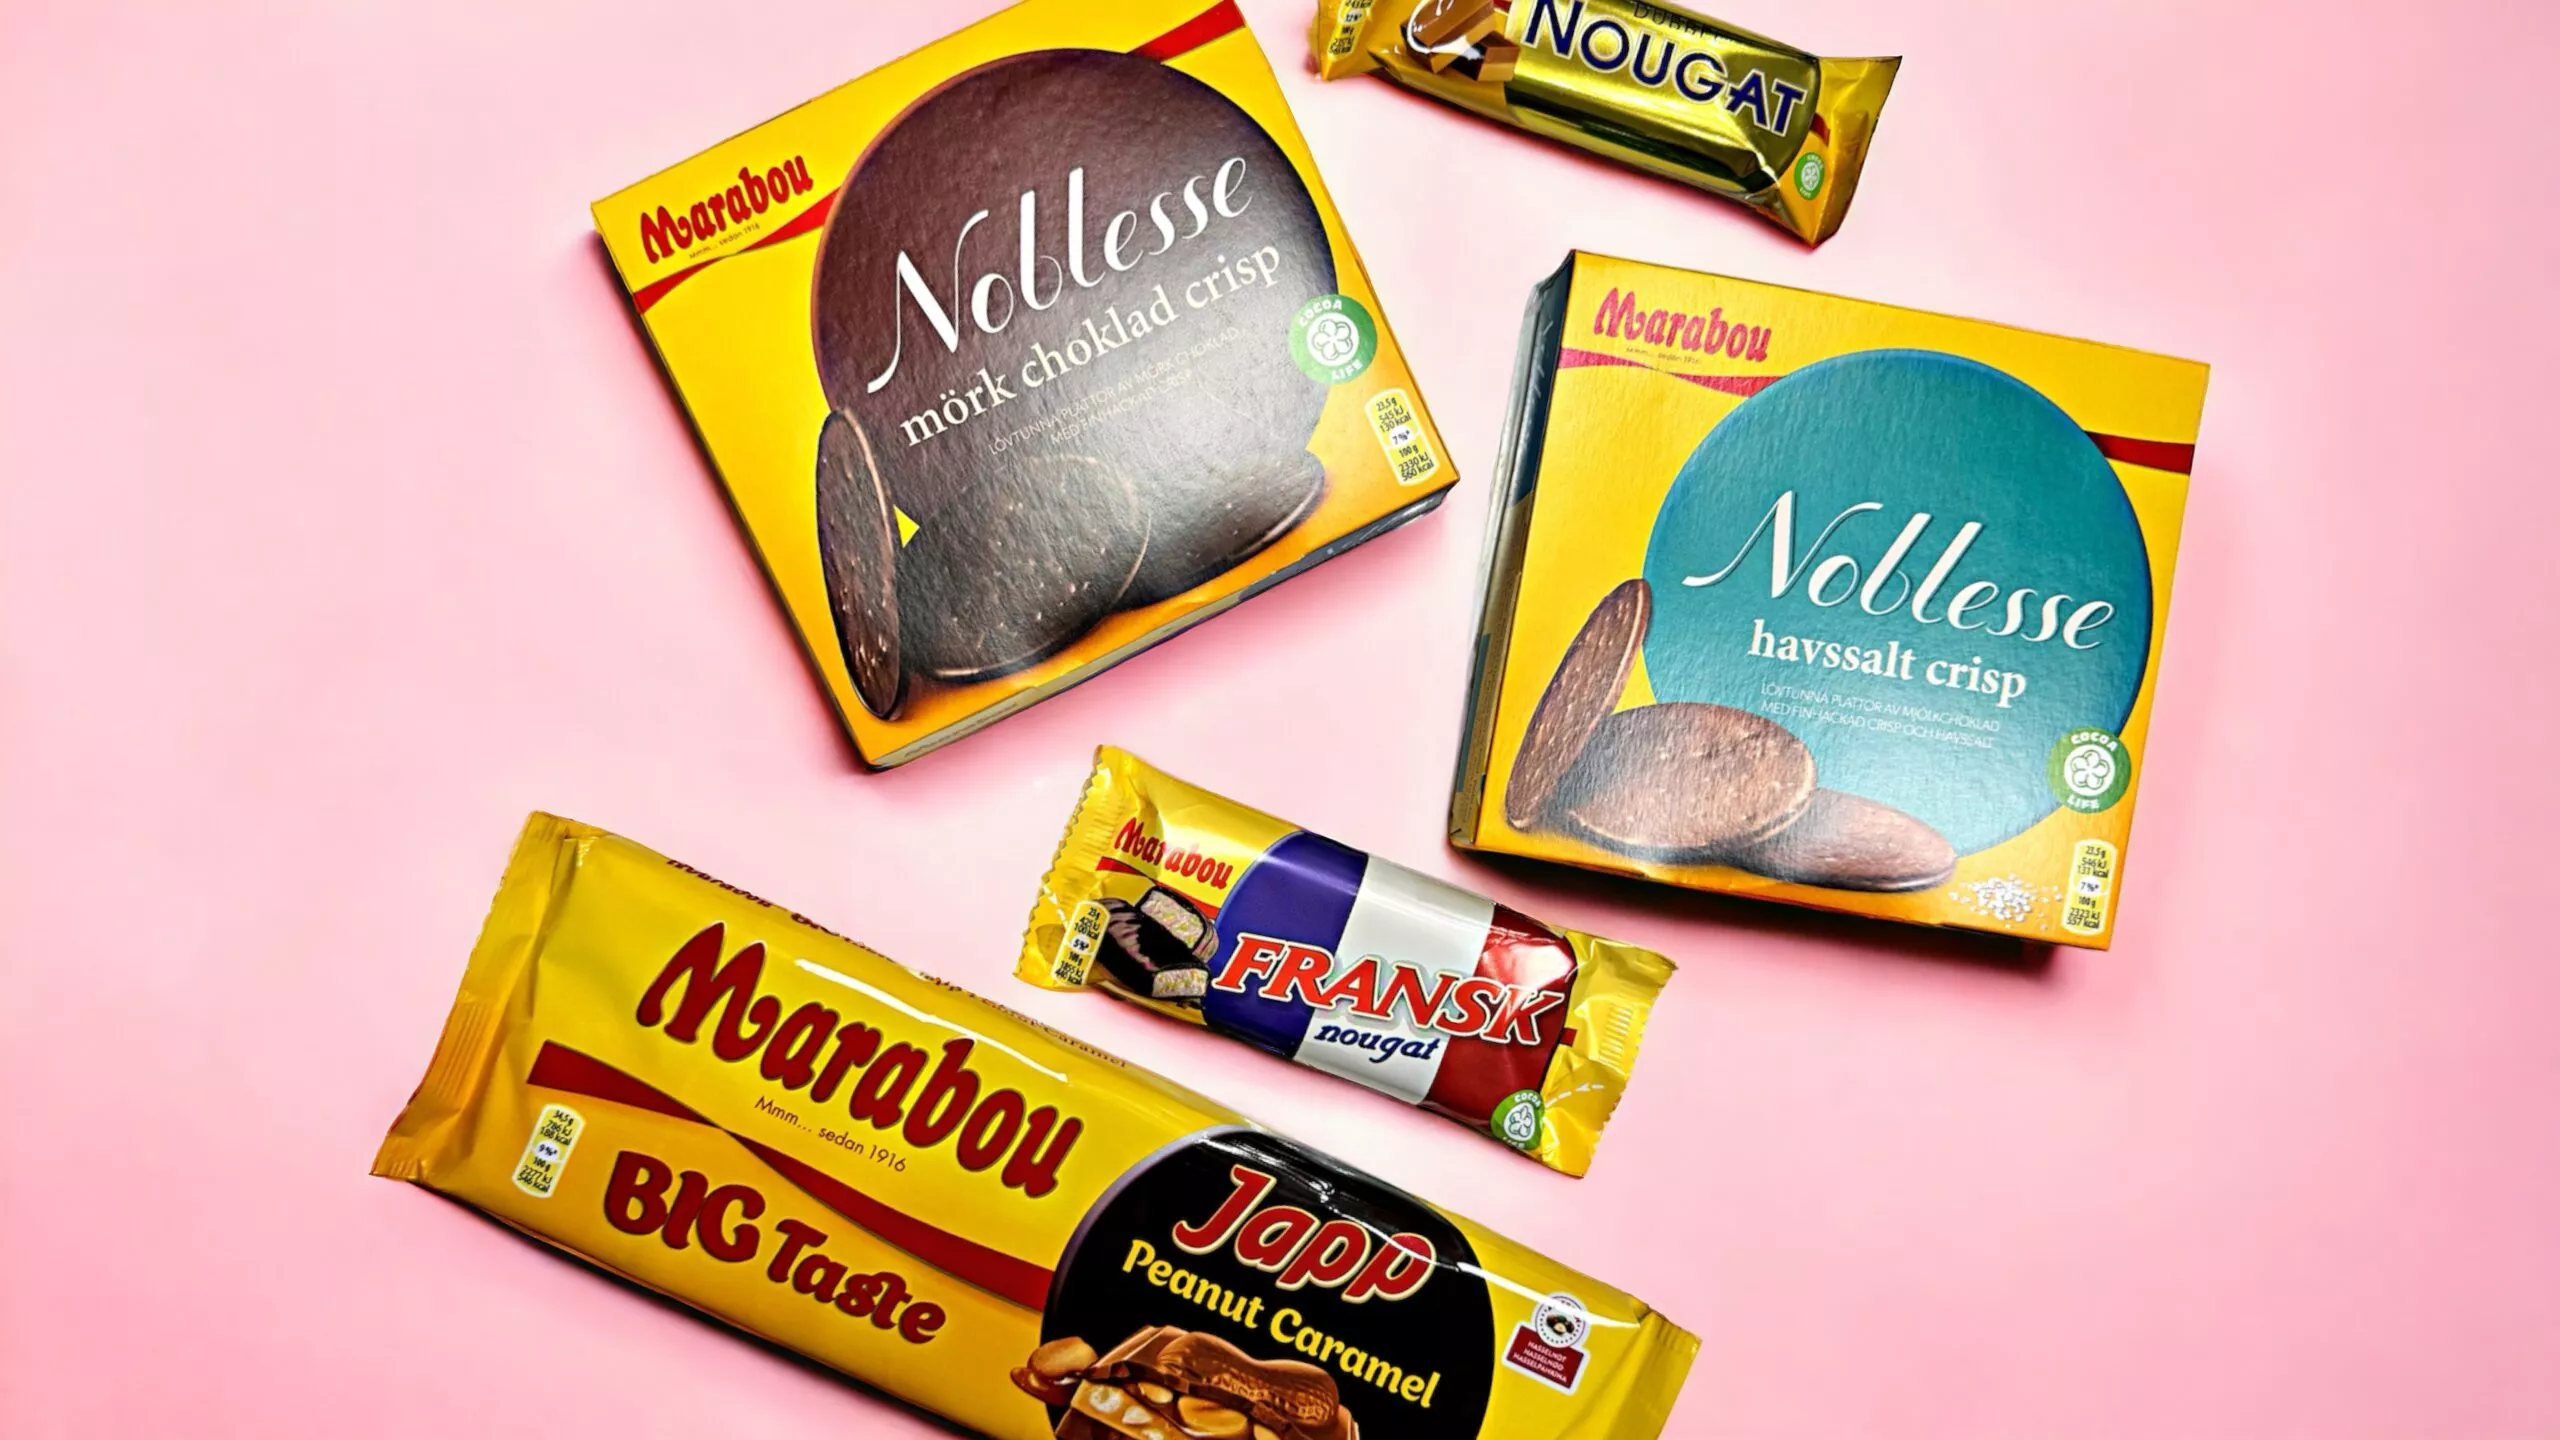 Die süße Versuchung aus Schweden: Marabou-Schokolade im Naschhaus entdecken! 1